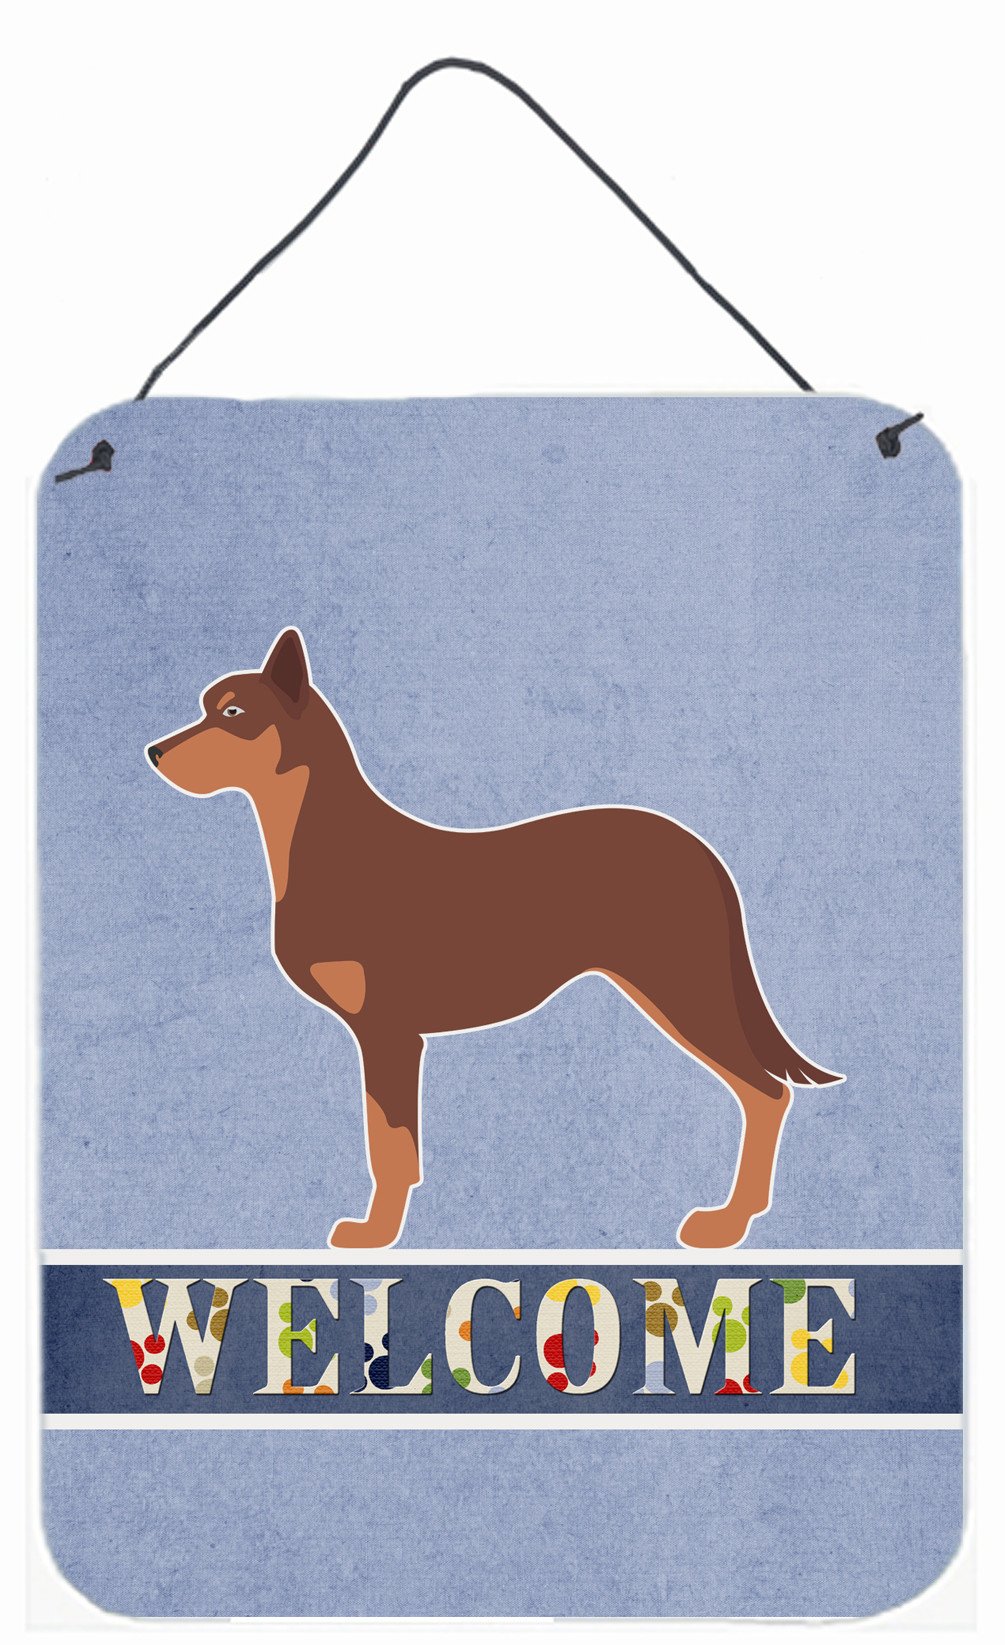 Australian Kelpie Dog Welcome Wall or Door Hanging Prints BB5533DS1216 by Caroline's Treasures